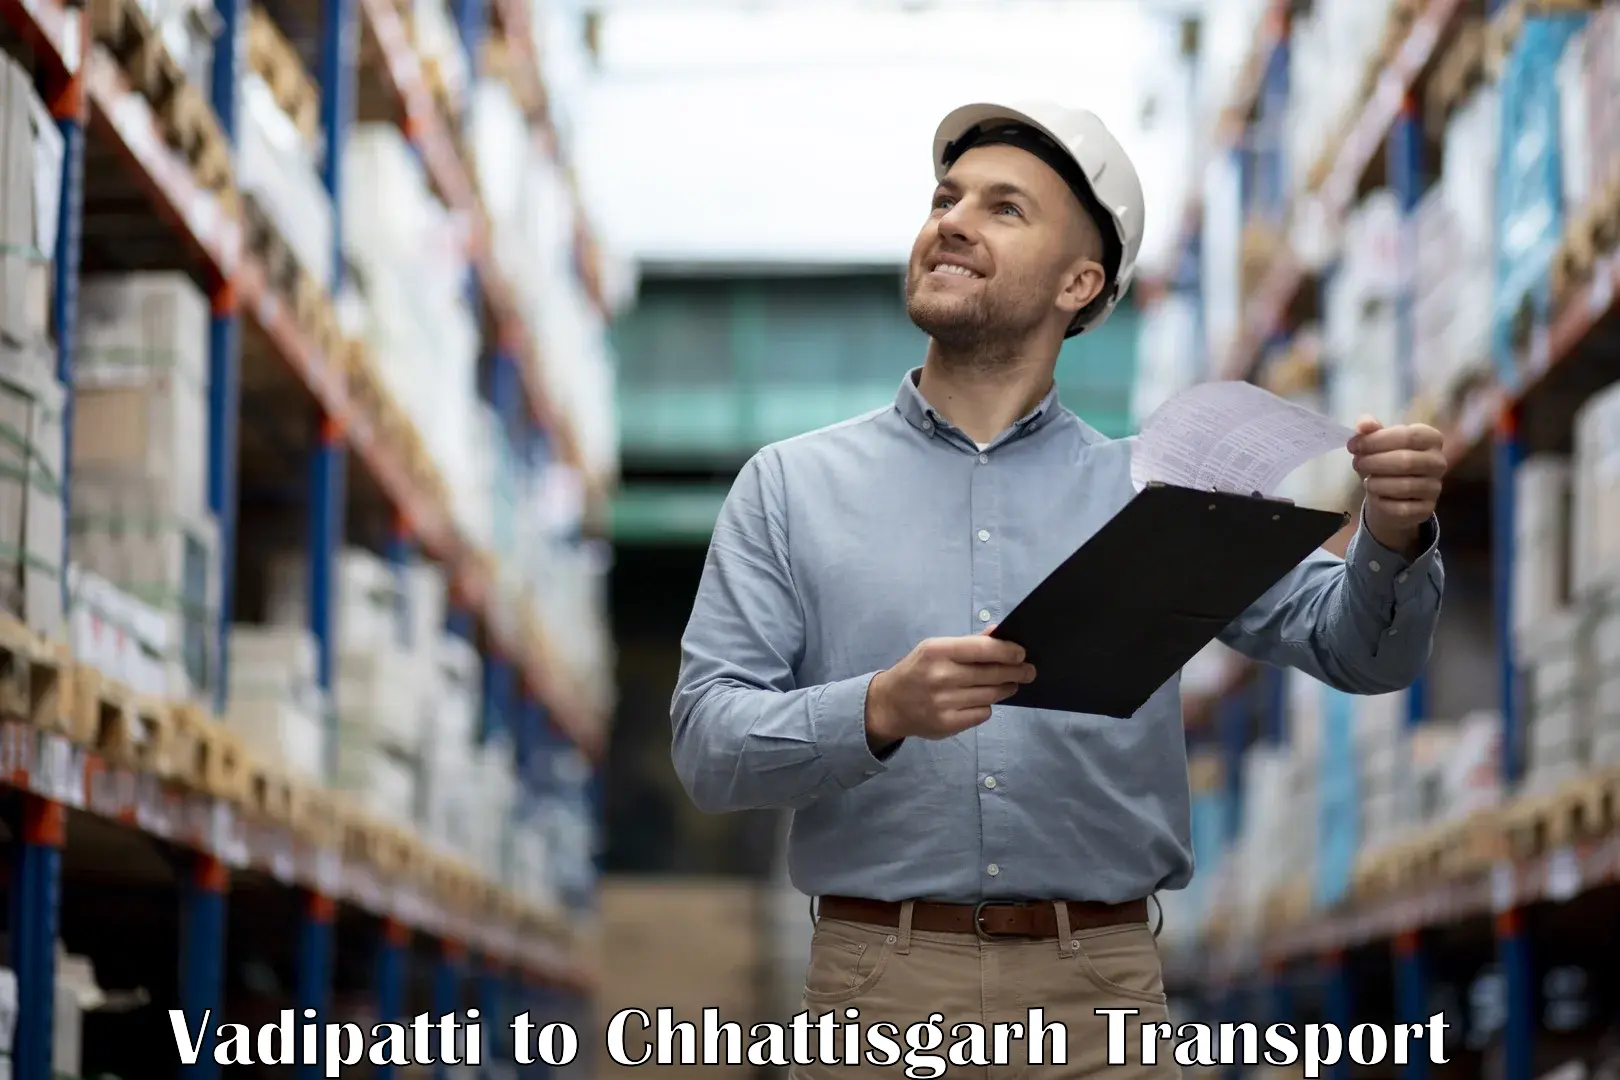 Domestic transport services Vadipatti to Patna Chhattisgarh